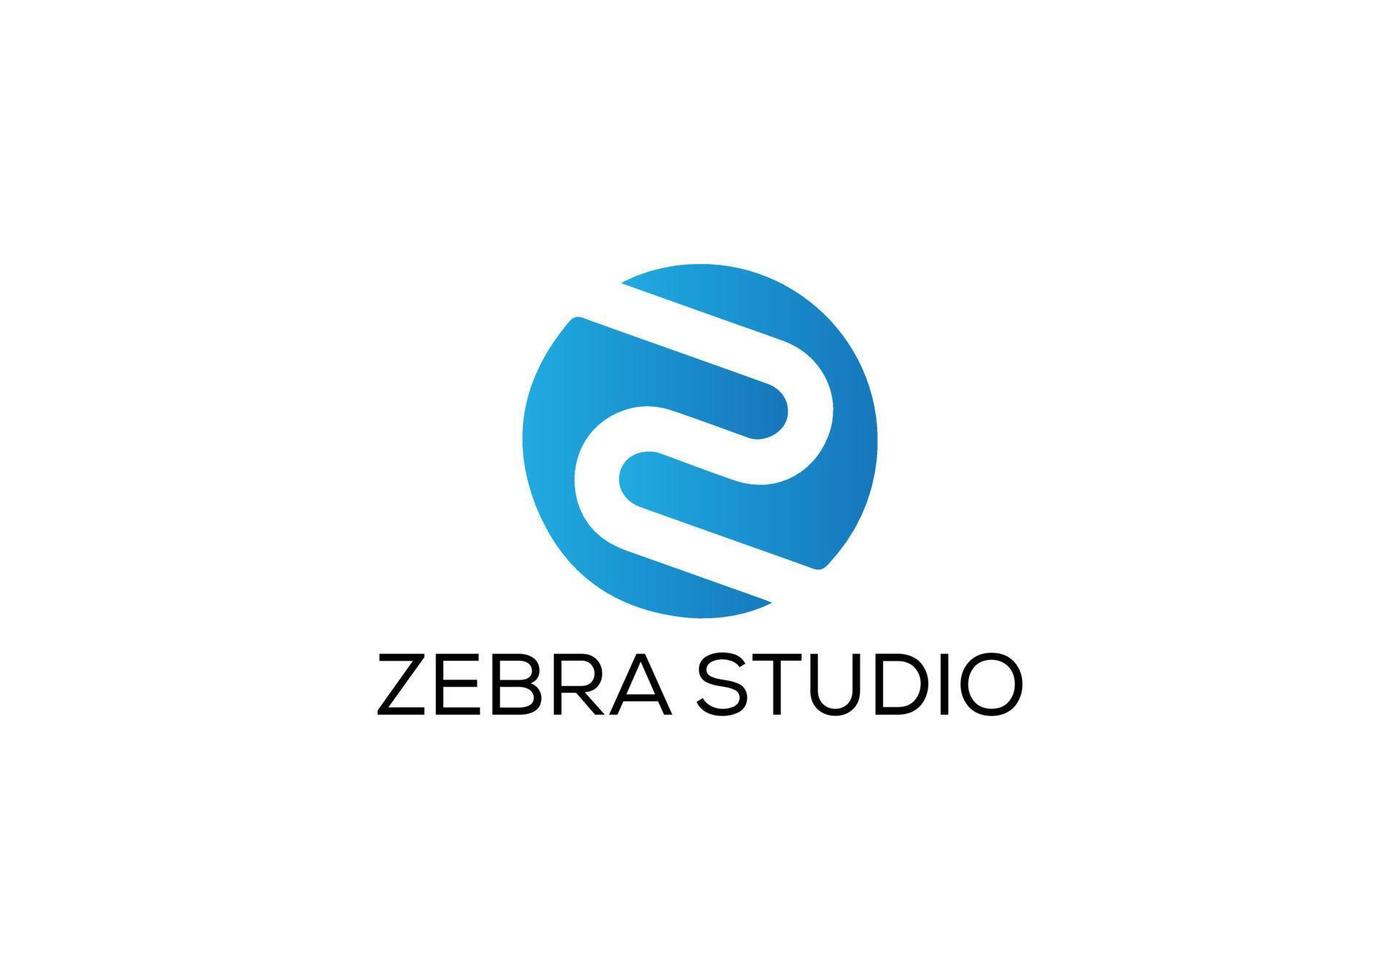 zebra studio abstrato z letra letras modernas design de logotipo vetor